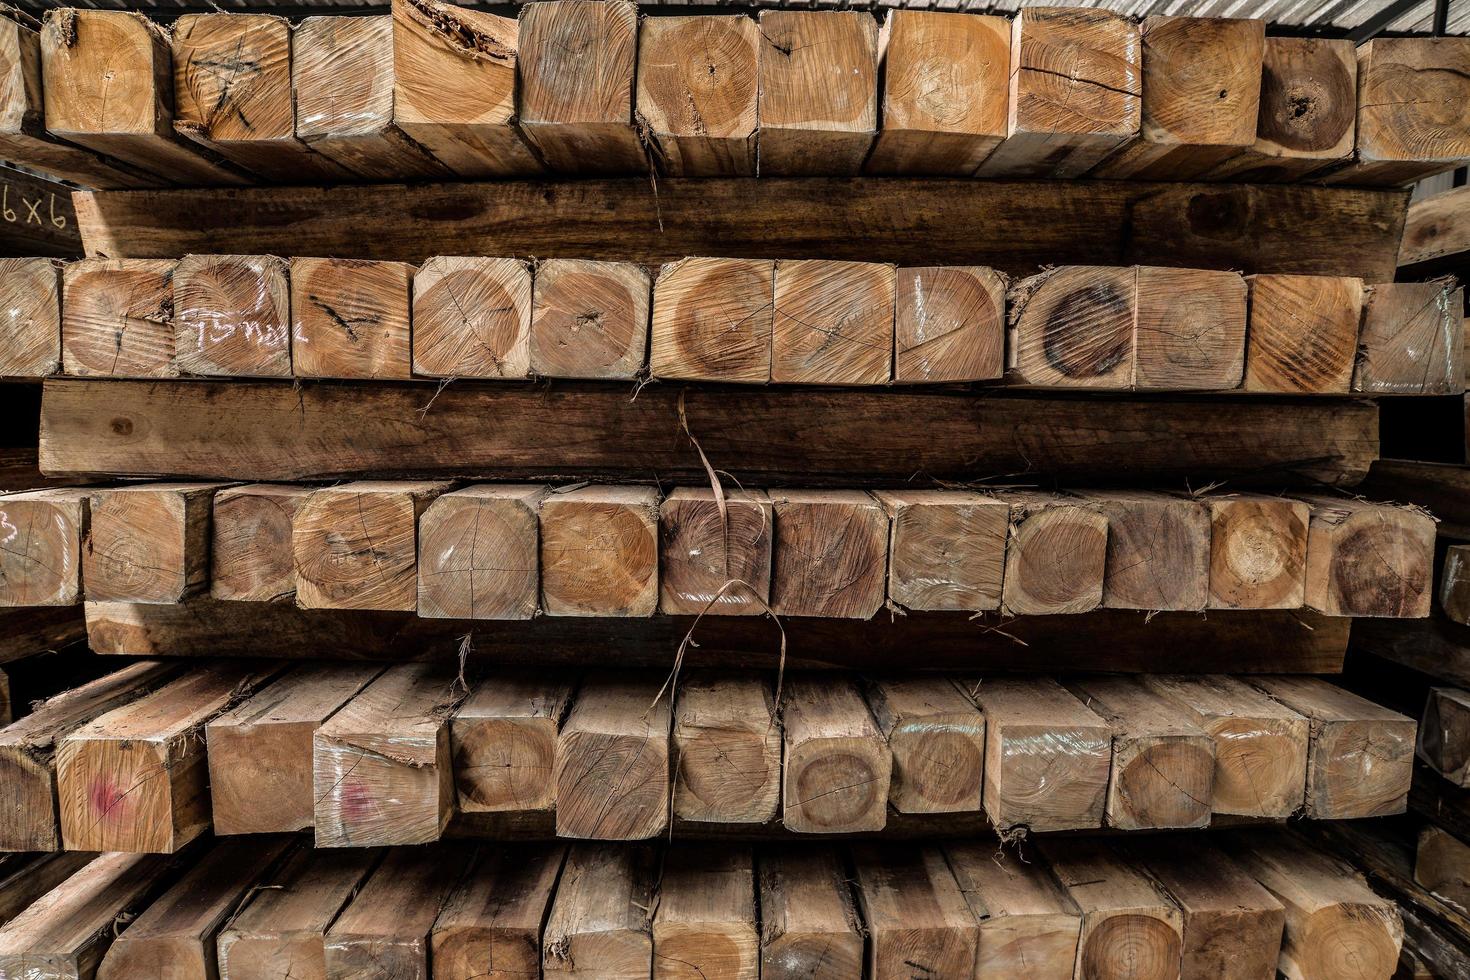 de groep houten pallet in de fabriek. pallet is een druk zelfstandig naamwoord, maar het is voornamelijk een plaat of frame van hout dat wordt gebruikt om dingen te dragen. het meest voorkomende type pallet is het type dat wordt gebruikt om vracht te verplaatsen. foto